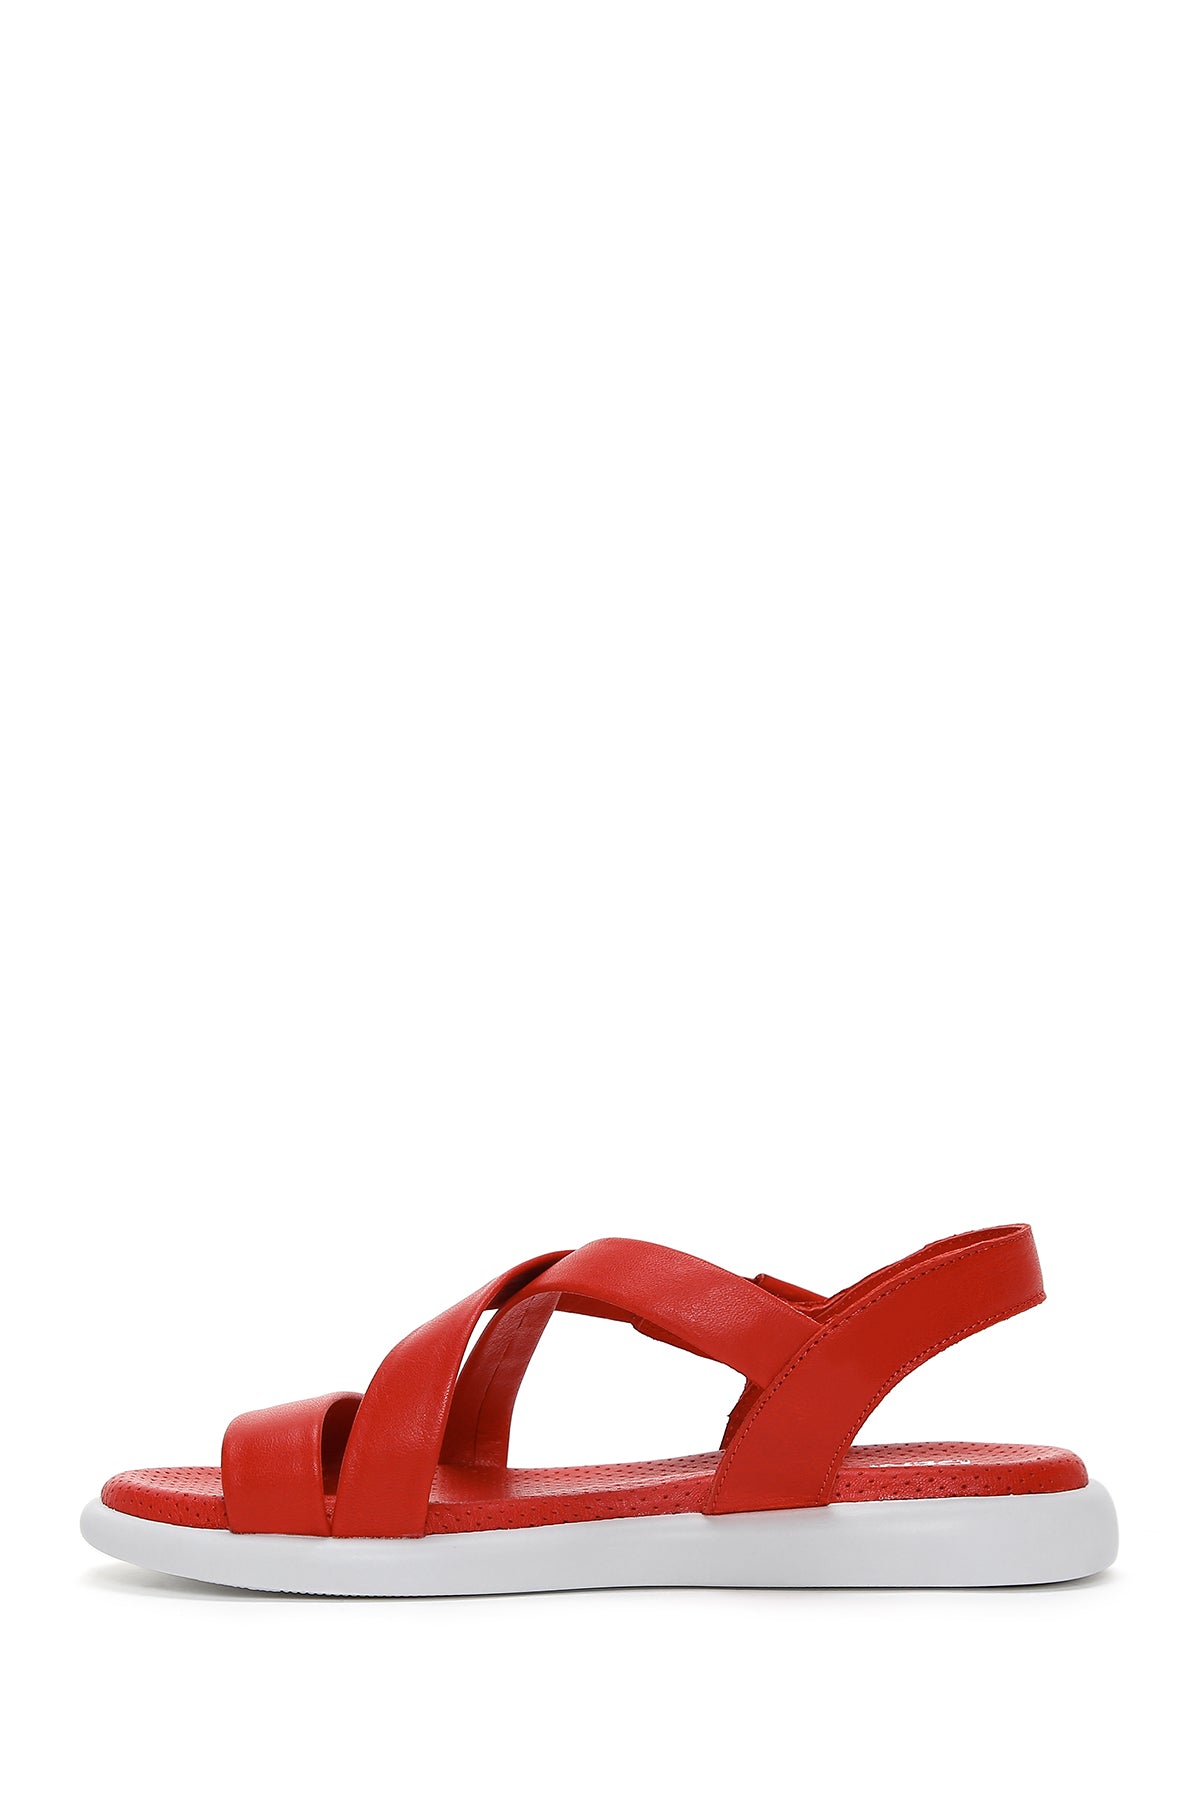 Kadın Kırmızı Deri Comfort Sandalet